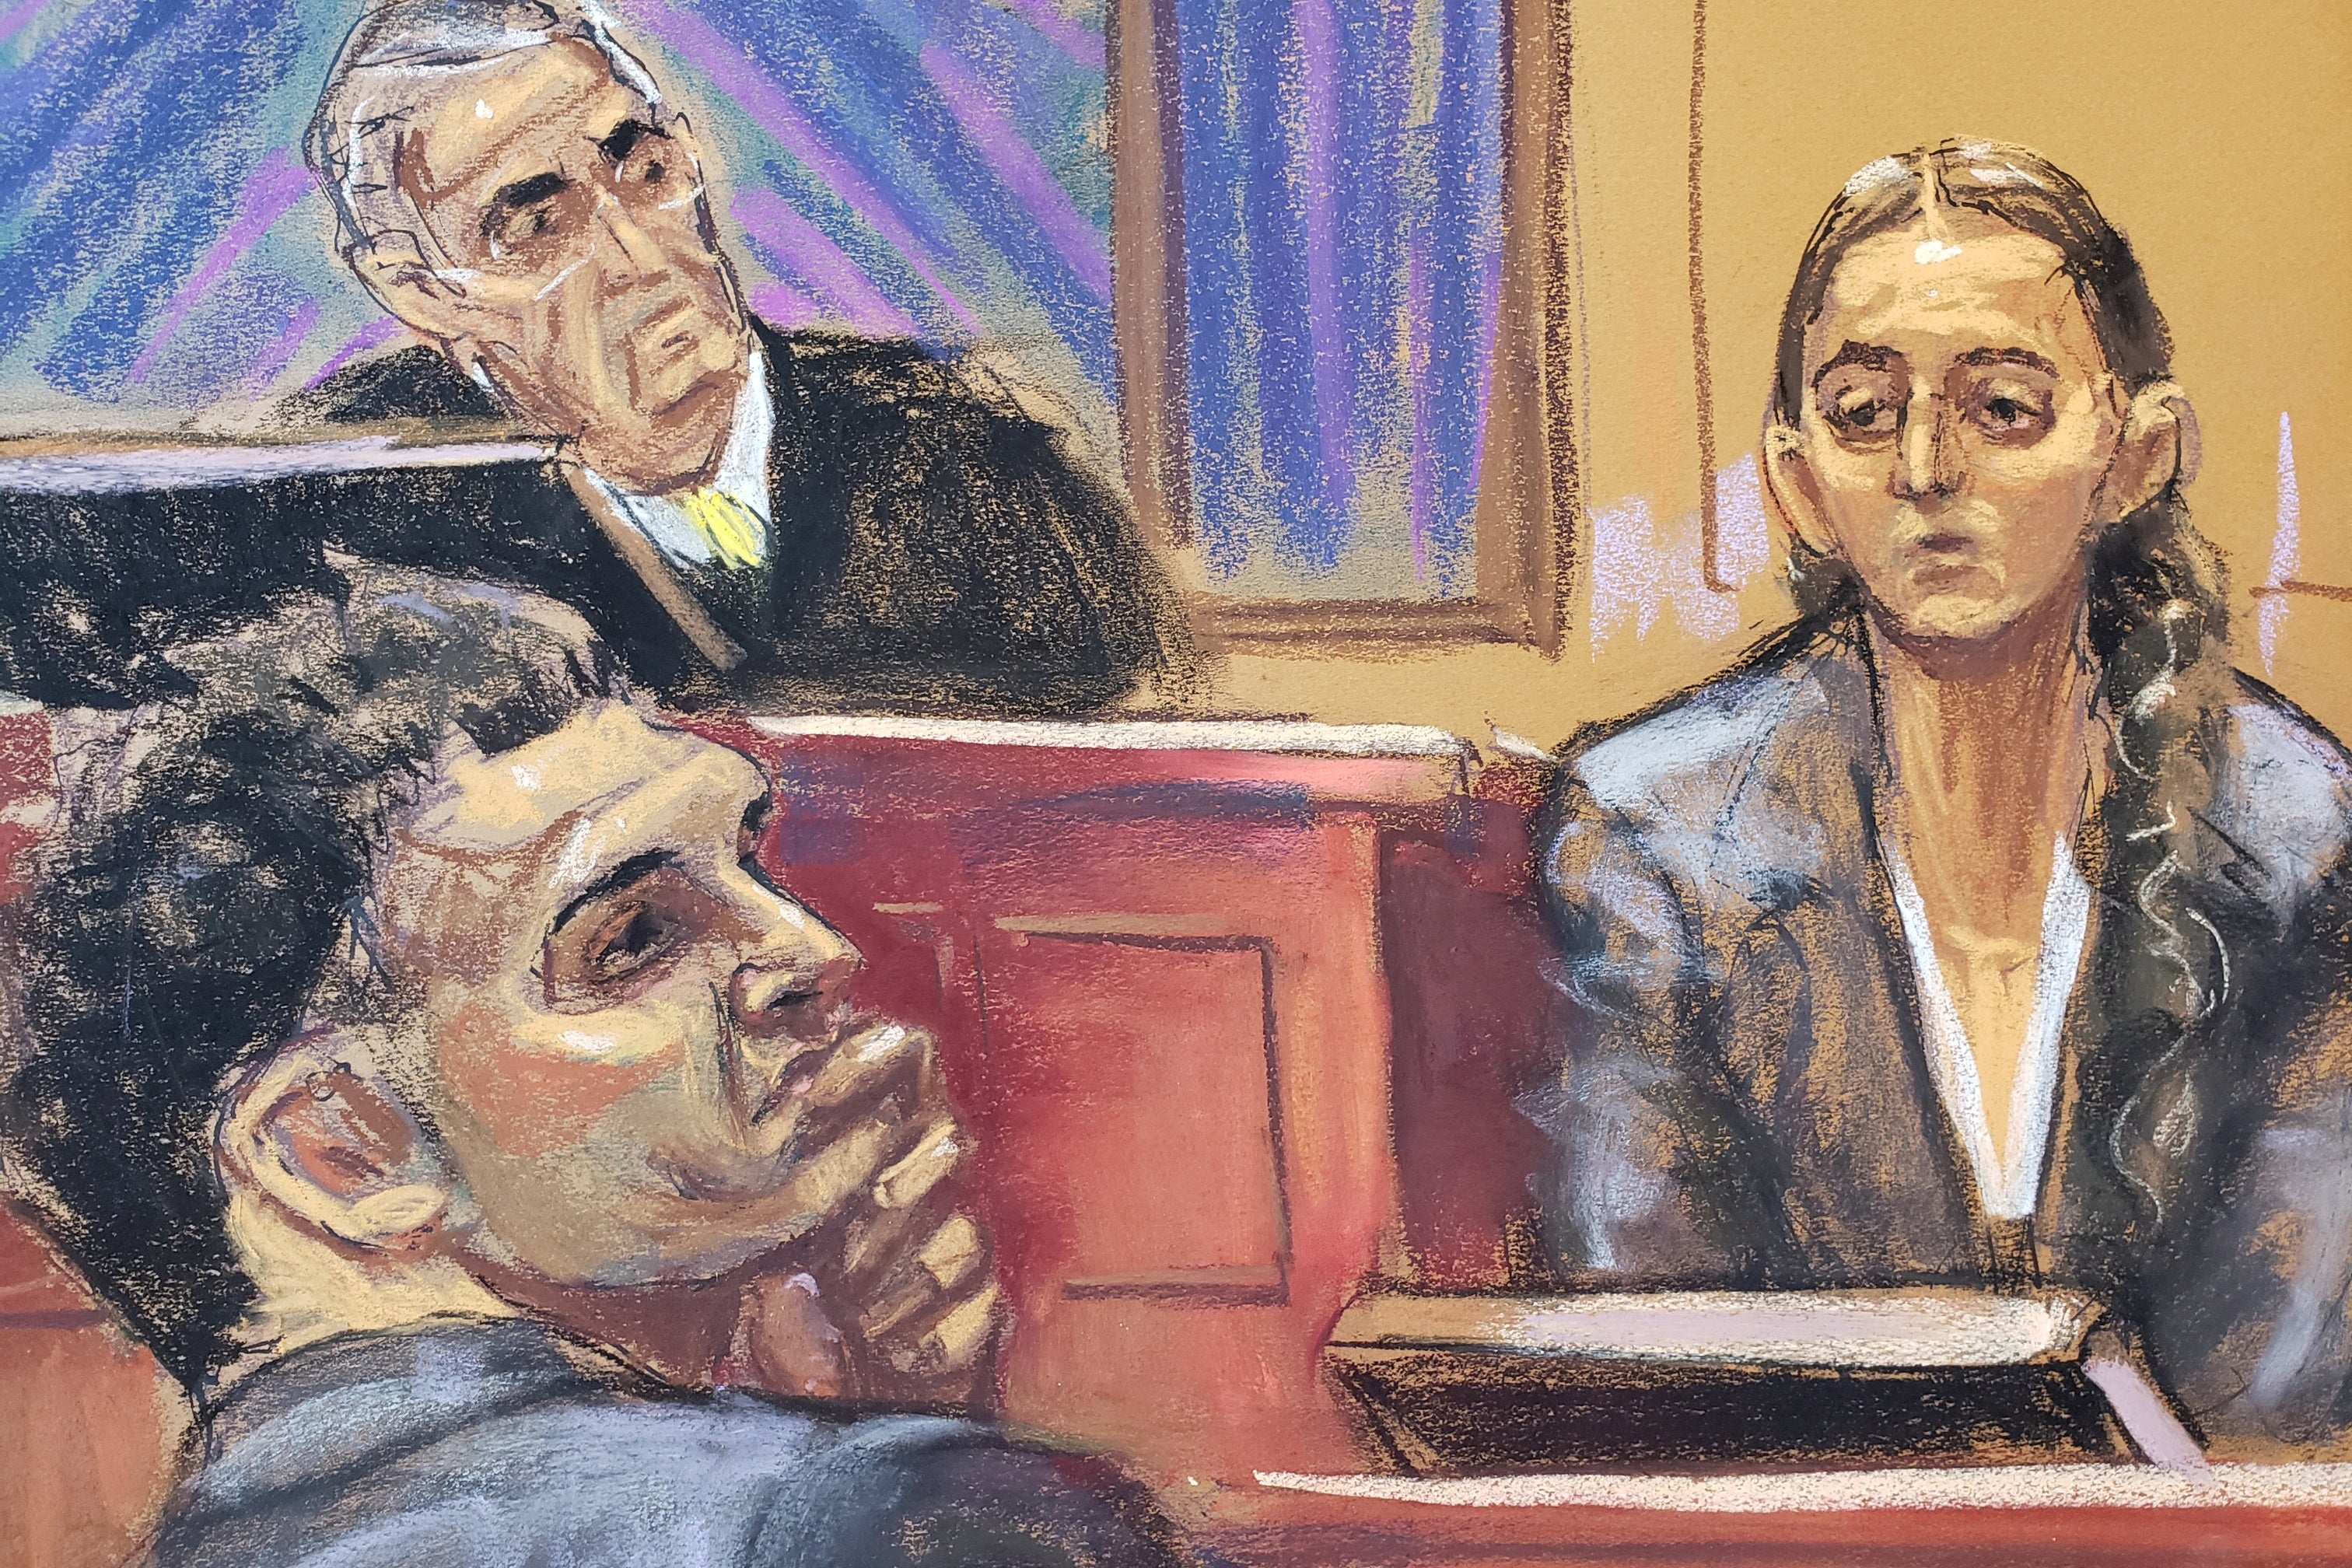 Caroline Ellison in courtroom sketch on the stand